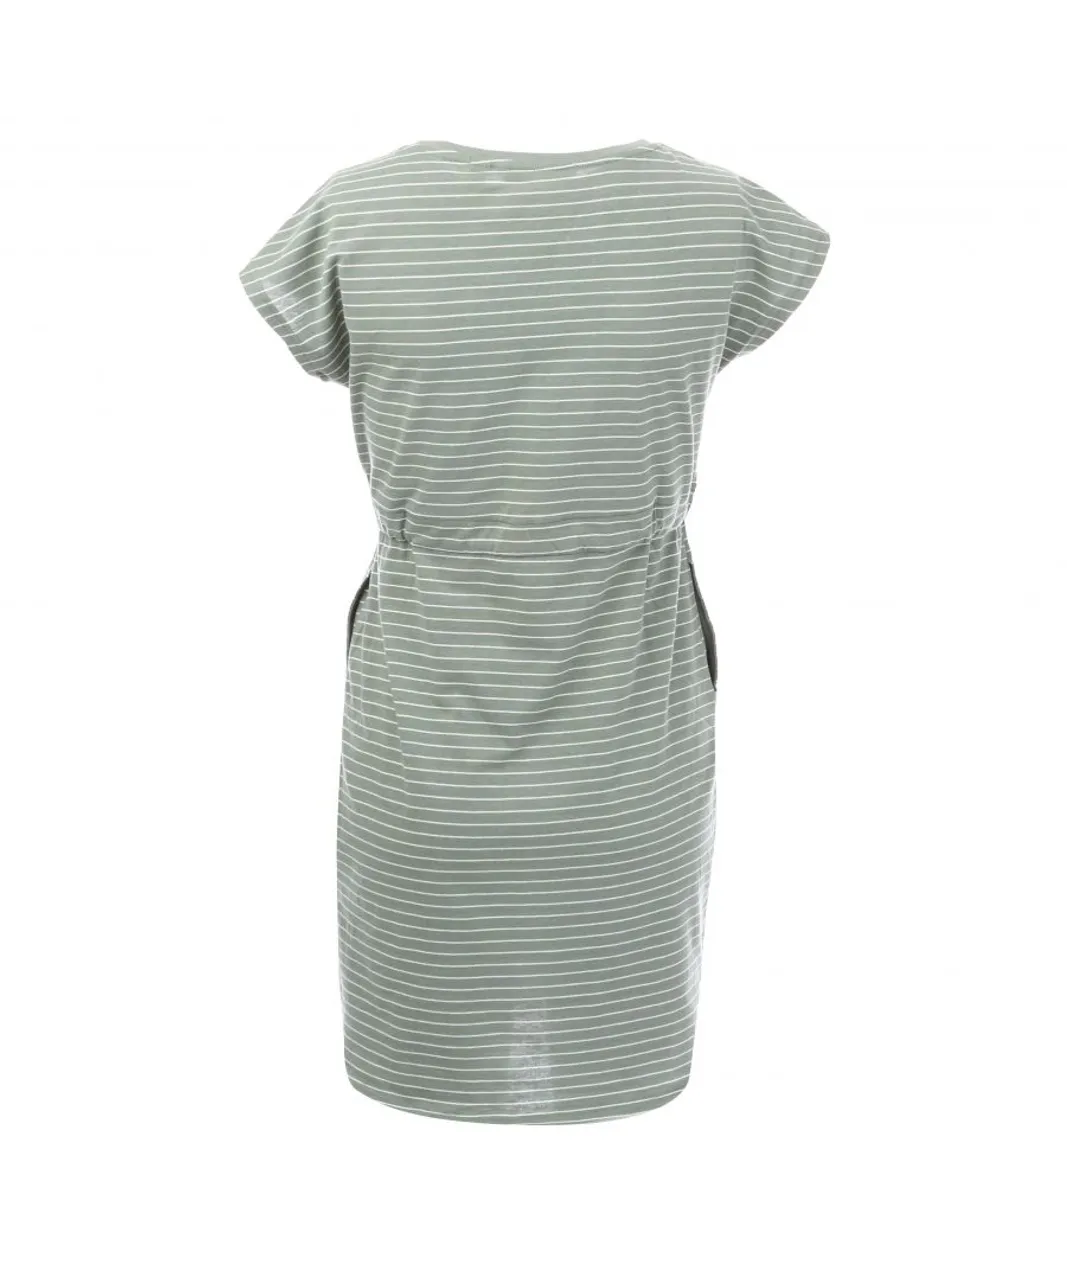 Vero Moda Womenss April Stripe Dress in Green White Cotton